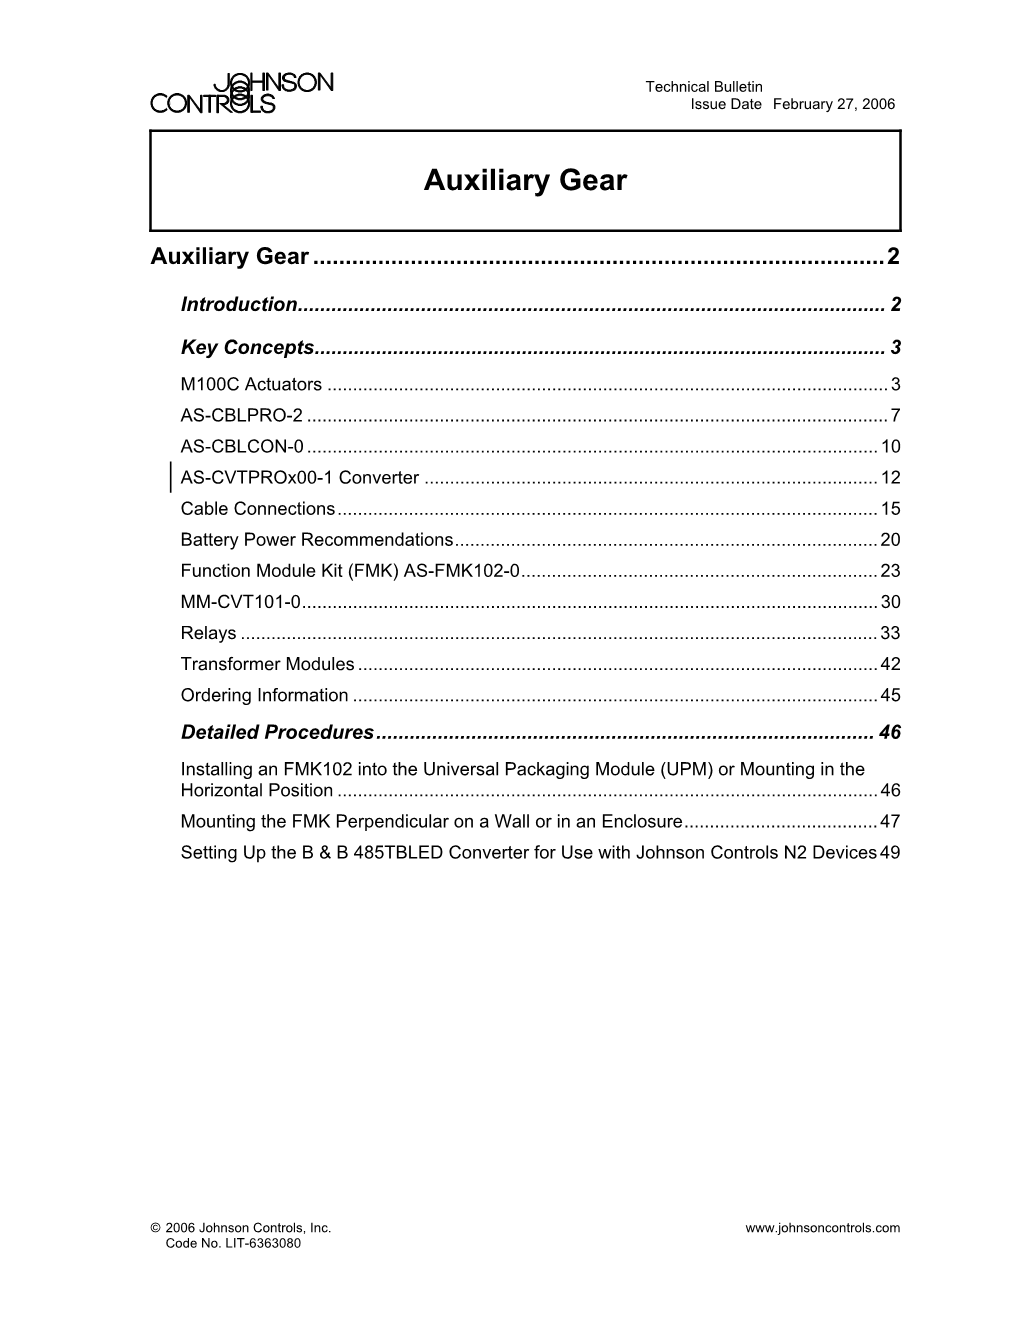 Auxiliary Gear Technical Bulletin